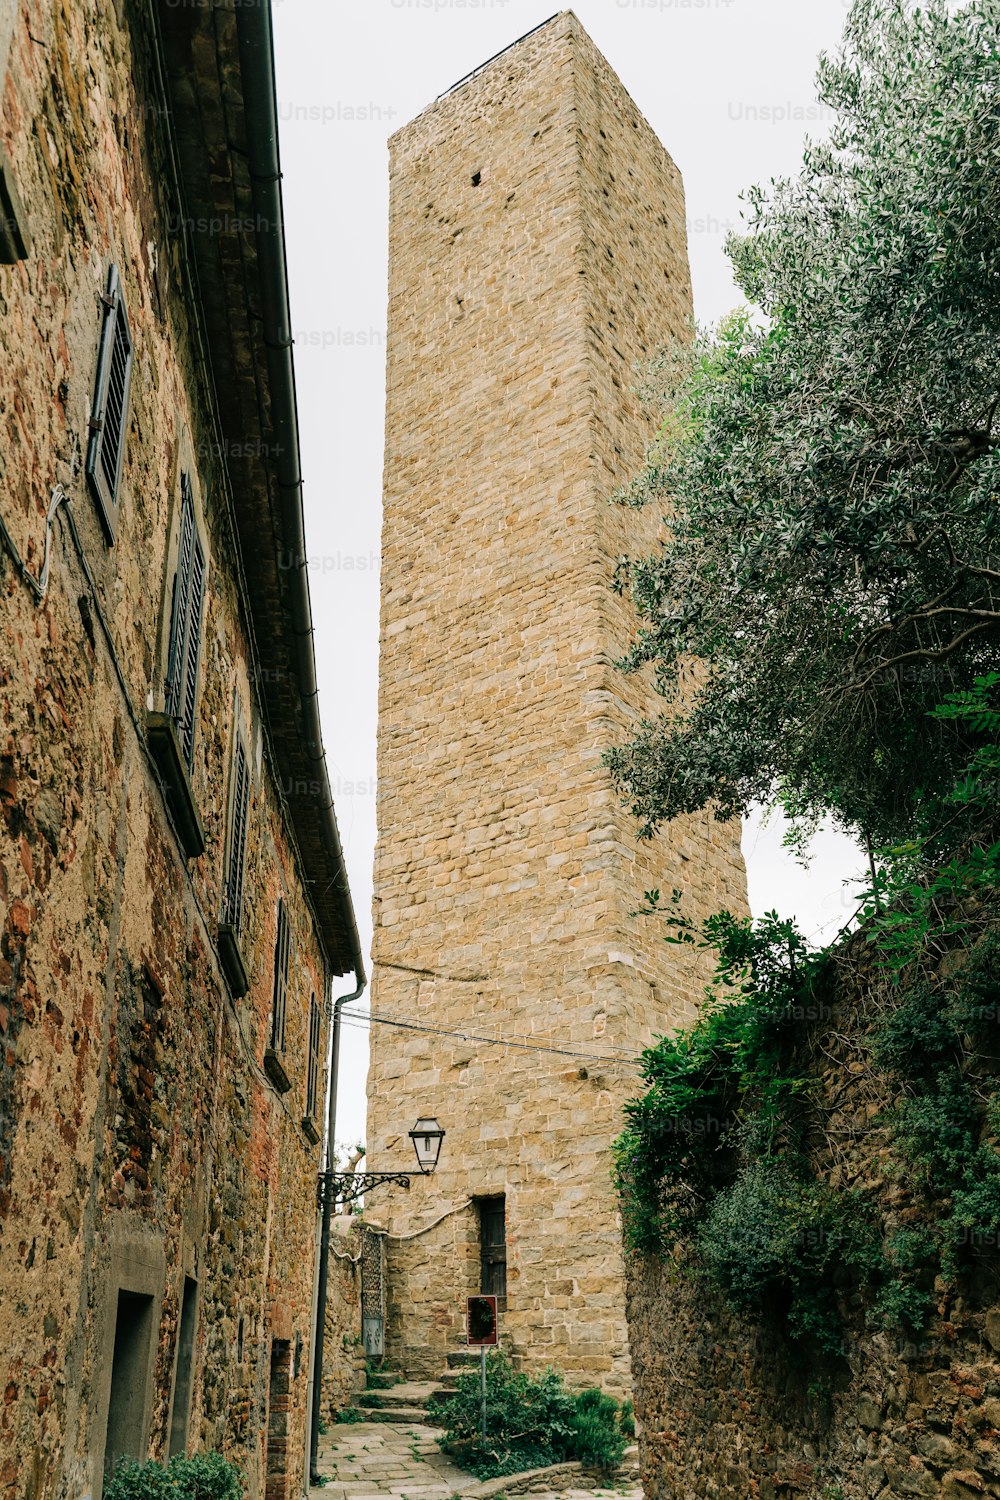 Un edificio de piedra con una torre del reloj al fondo